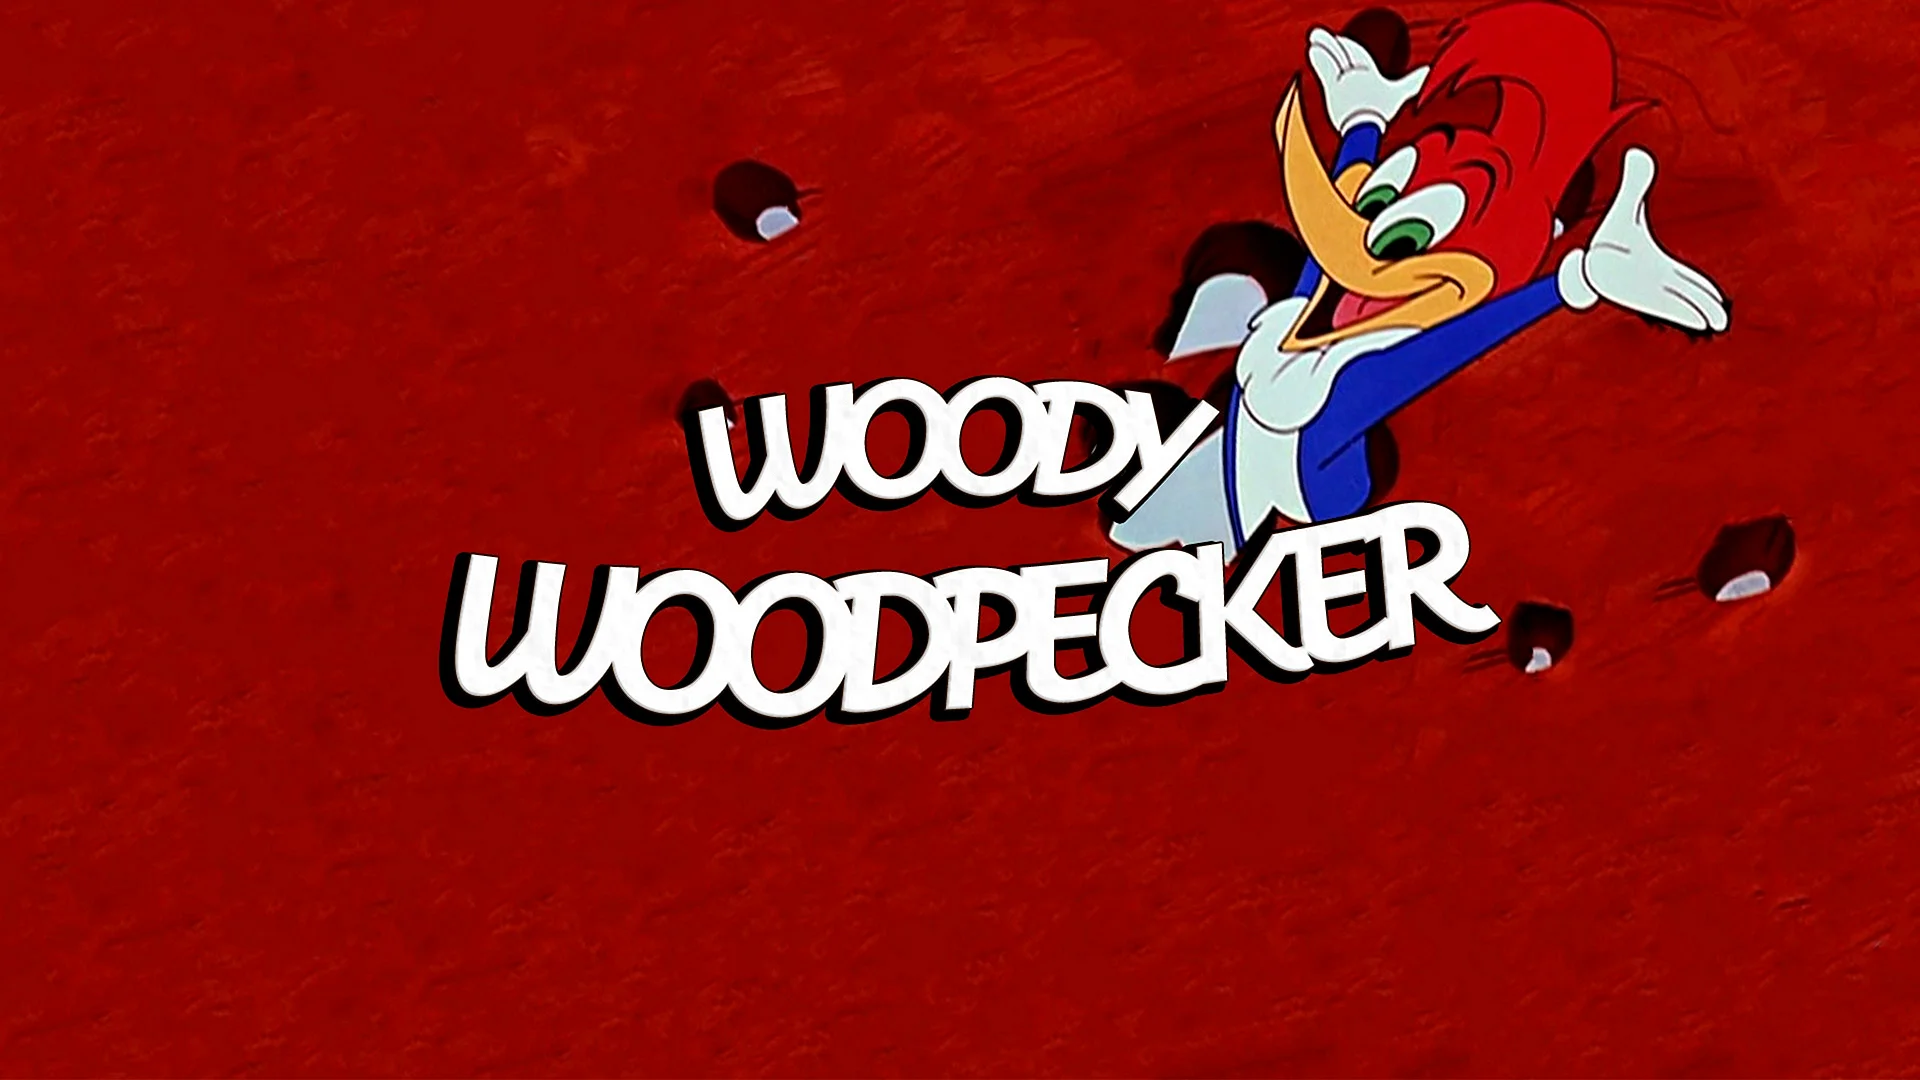 Woody Woodpecker Wallpaper